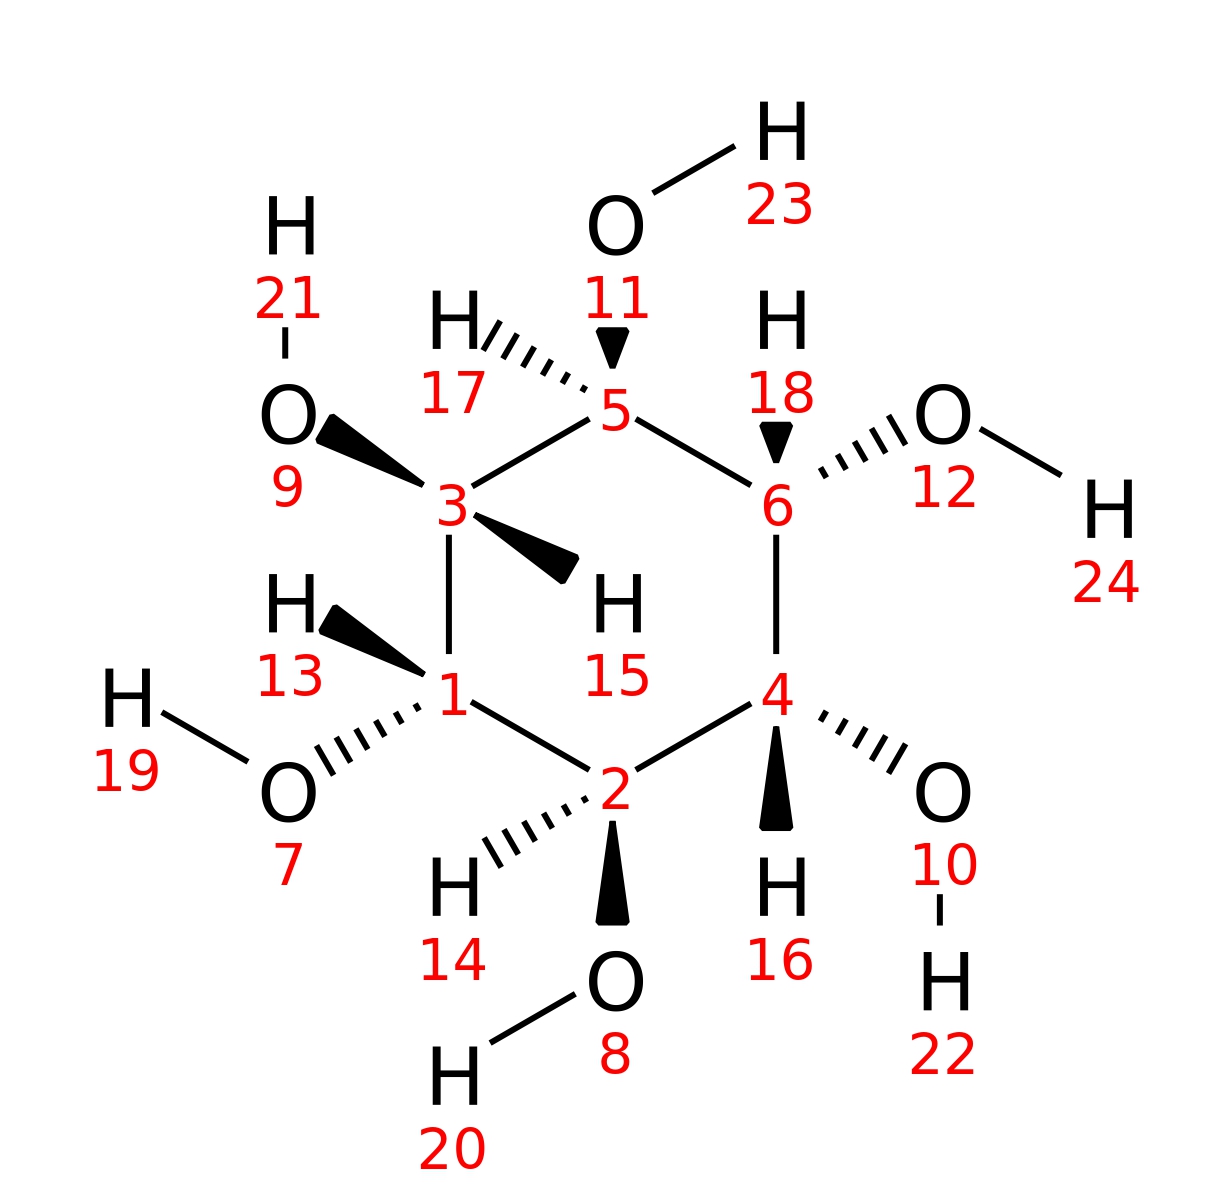 InChI=1S/C6H12O6/c7-1-2(8)4(10)6(12)5(11)3(1)9/h1-12H/t1-,2-,3-,4+,5+,6+